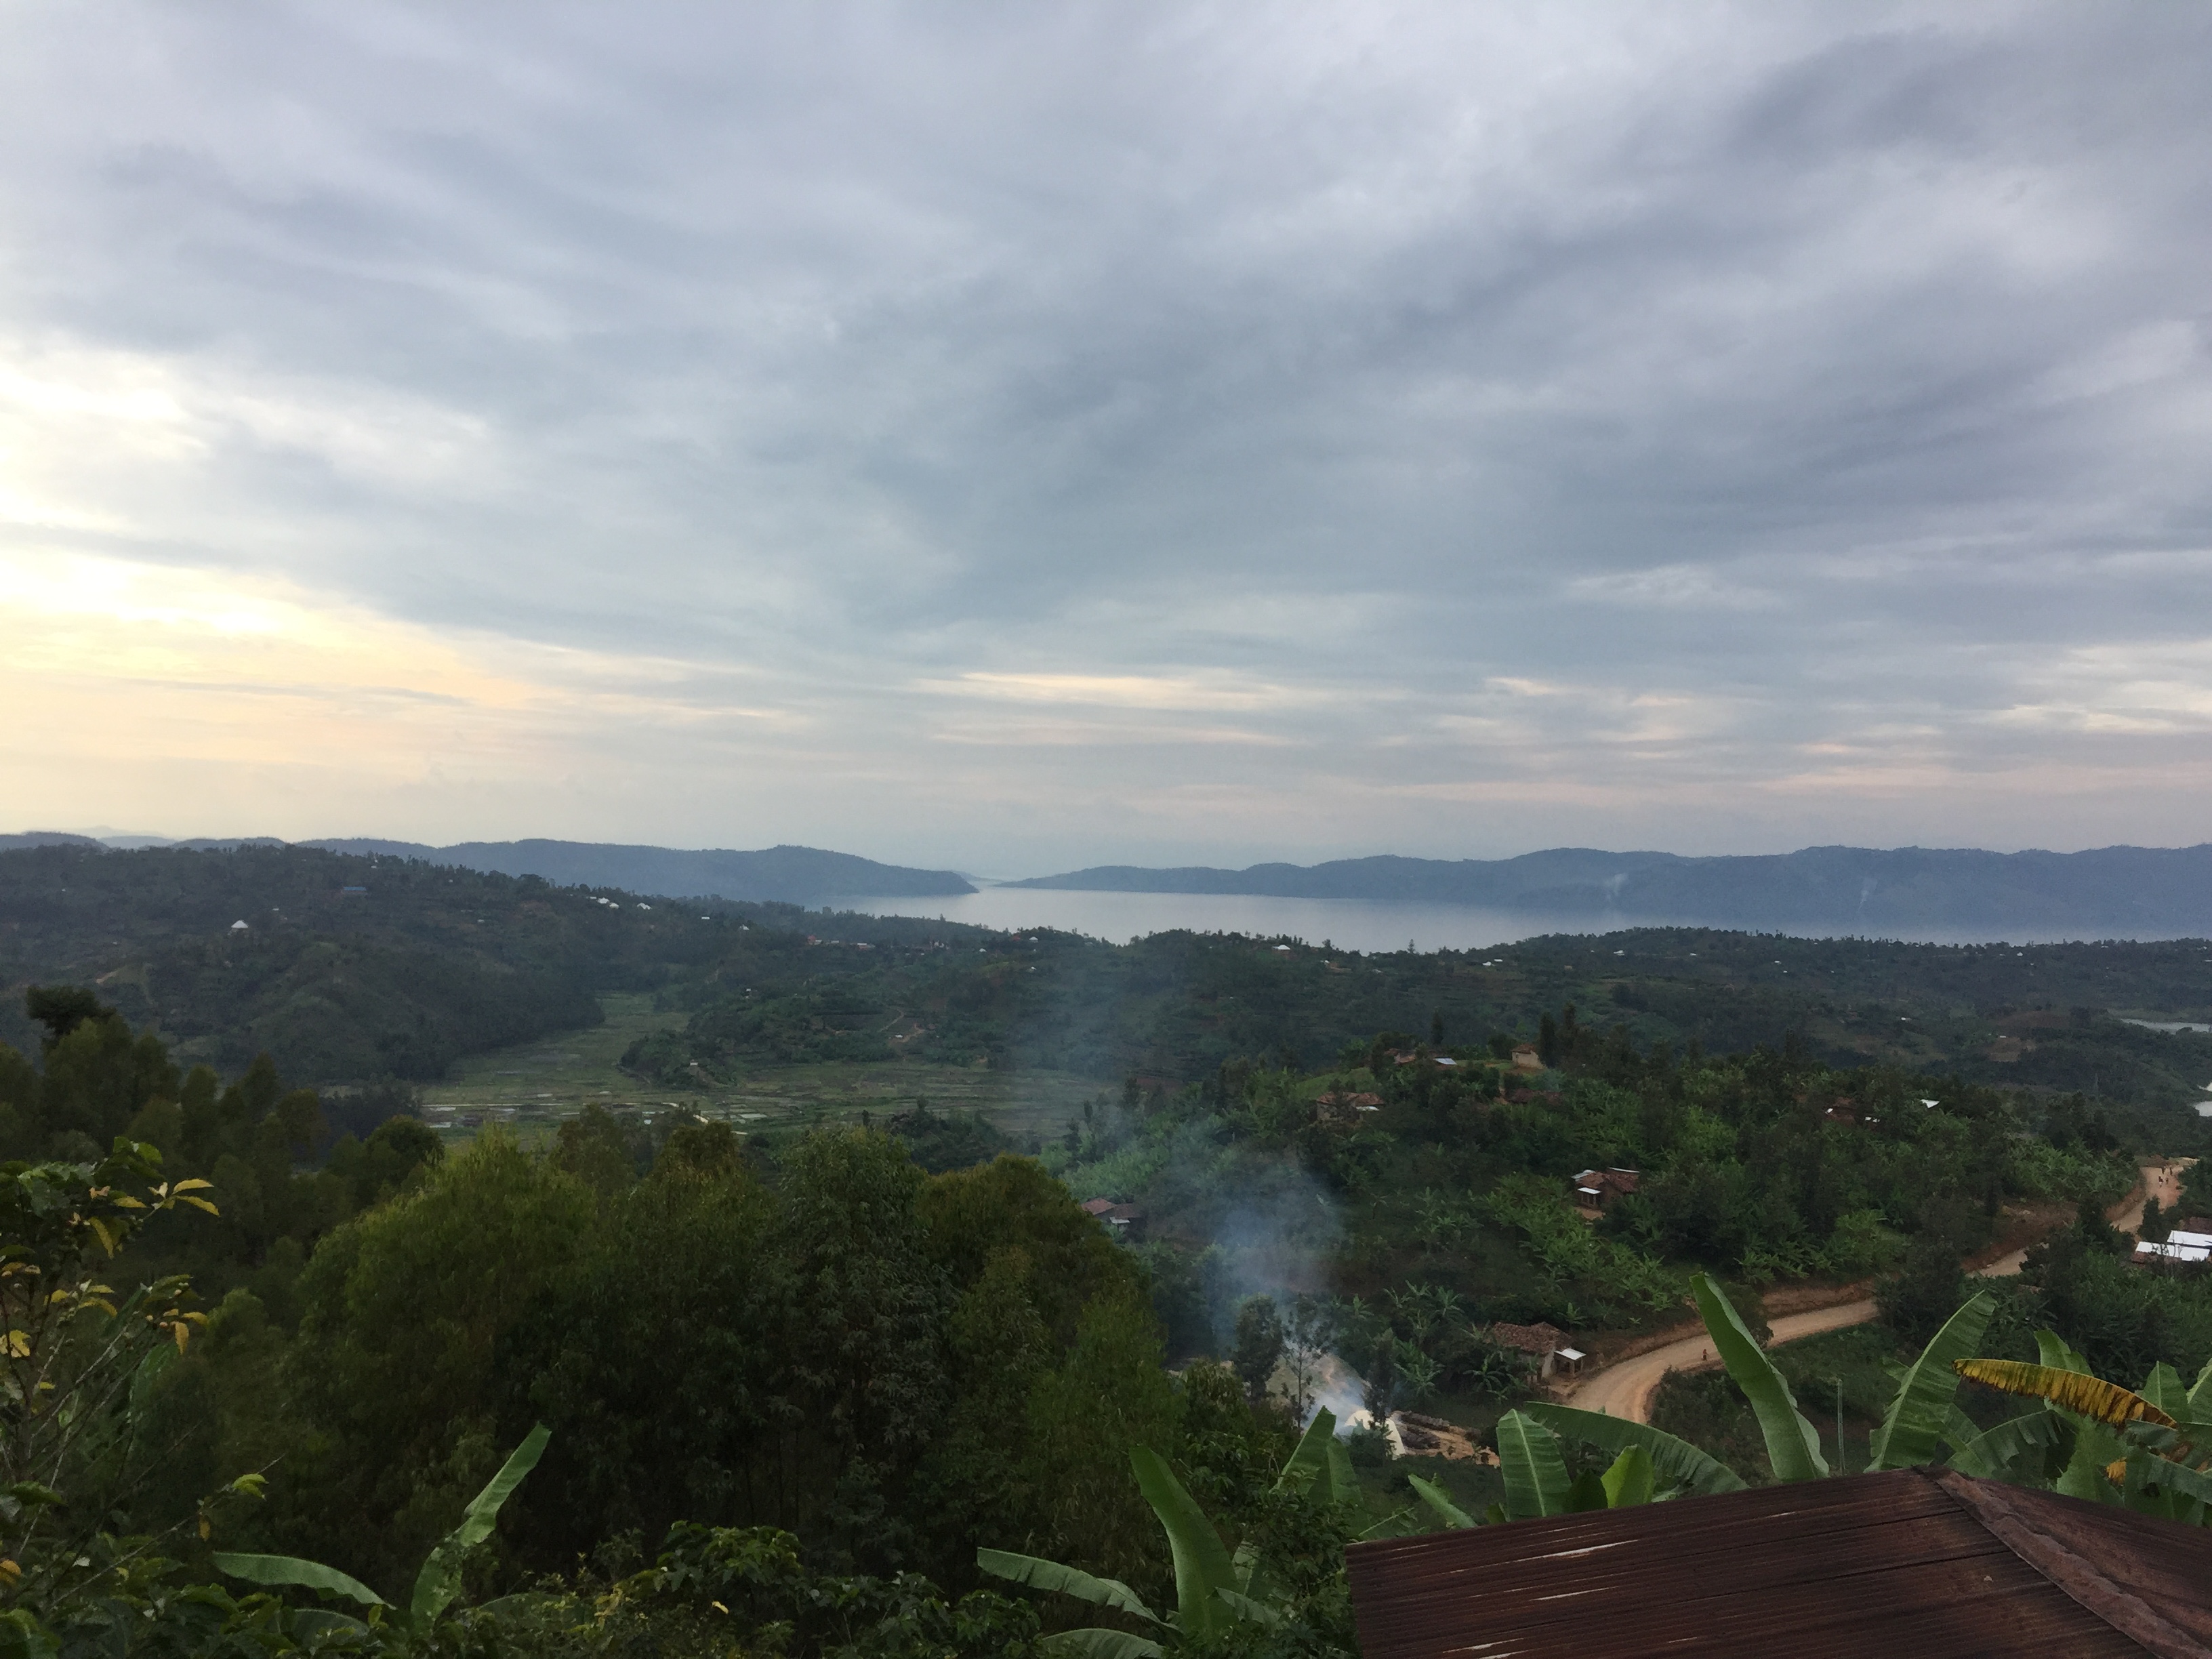 Vista del lago Kivu a lo lejos sobre colinas boscosas